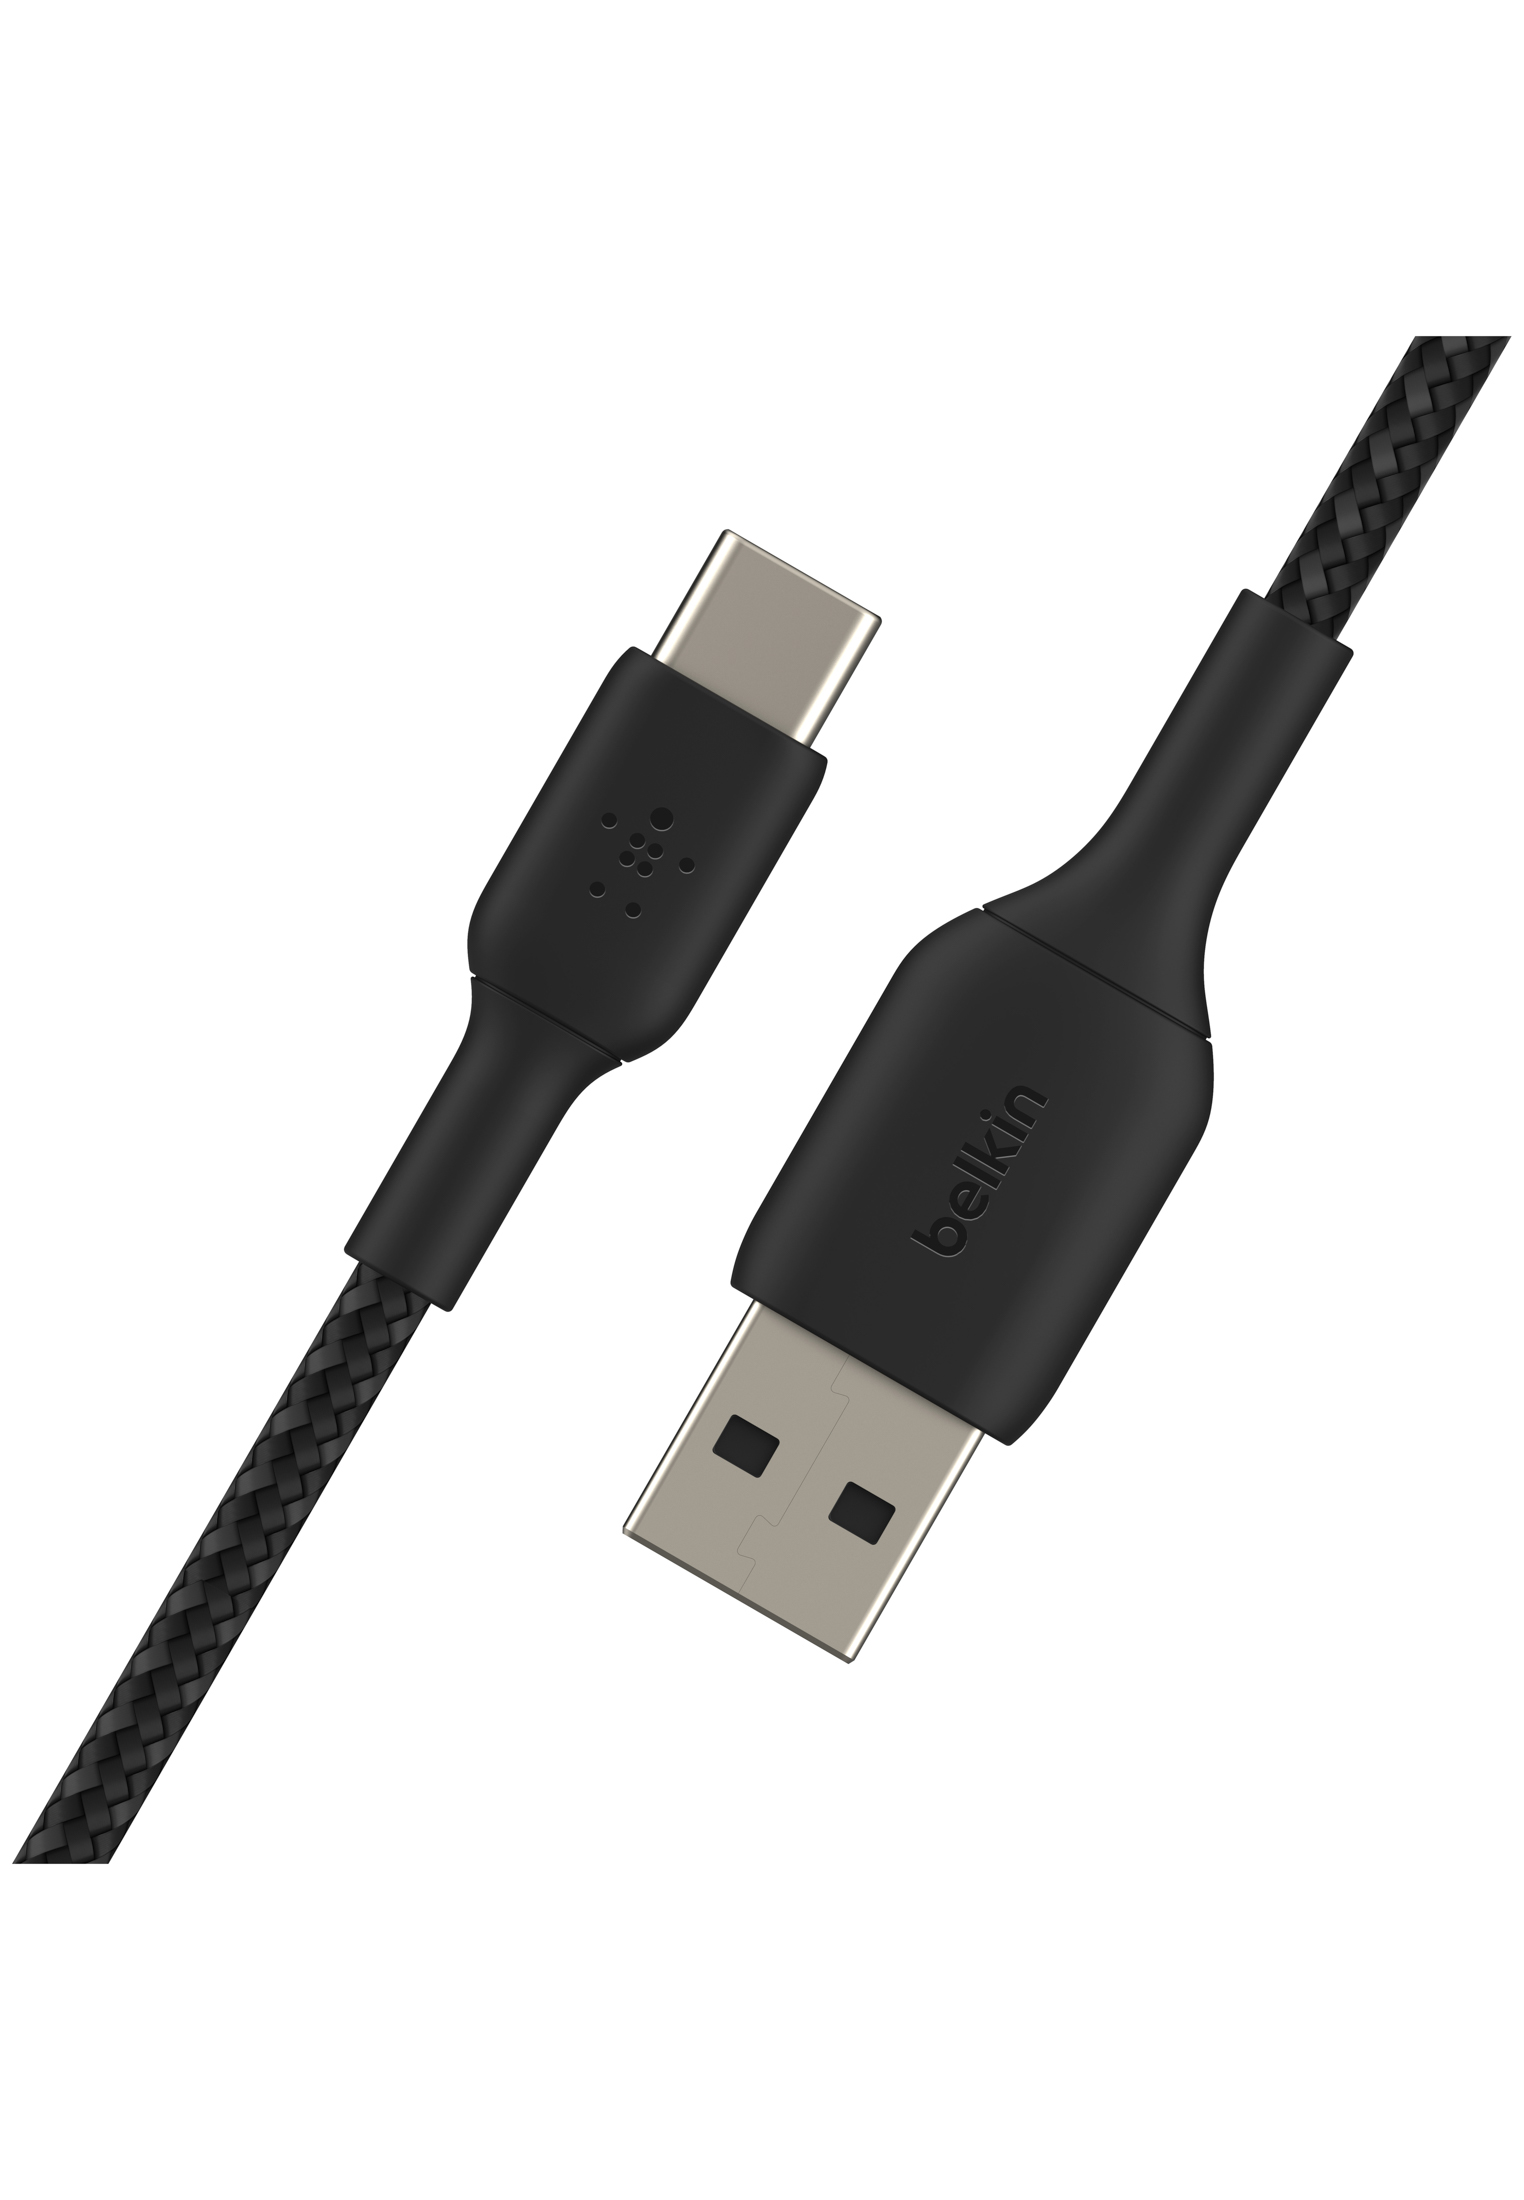 BOOST BELKIN CHARGE™, schwarz USB-C, 3 m, Lightningkabel